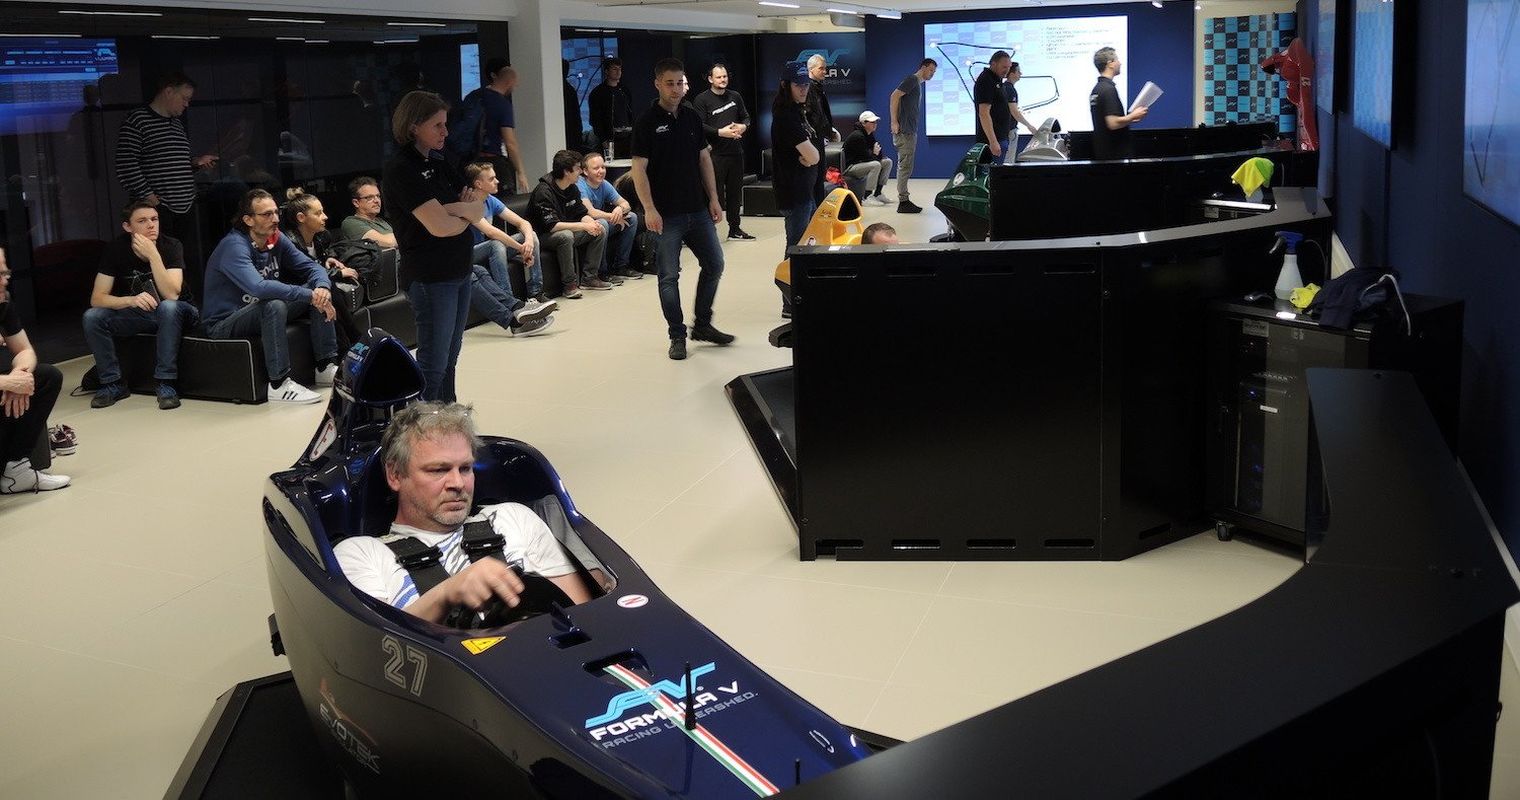 In Cham startet die erste Schweizer Simulatoren-Meisterschaft